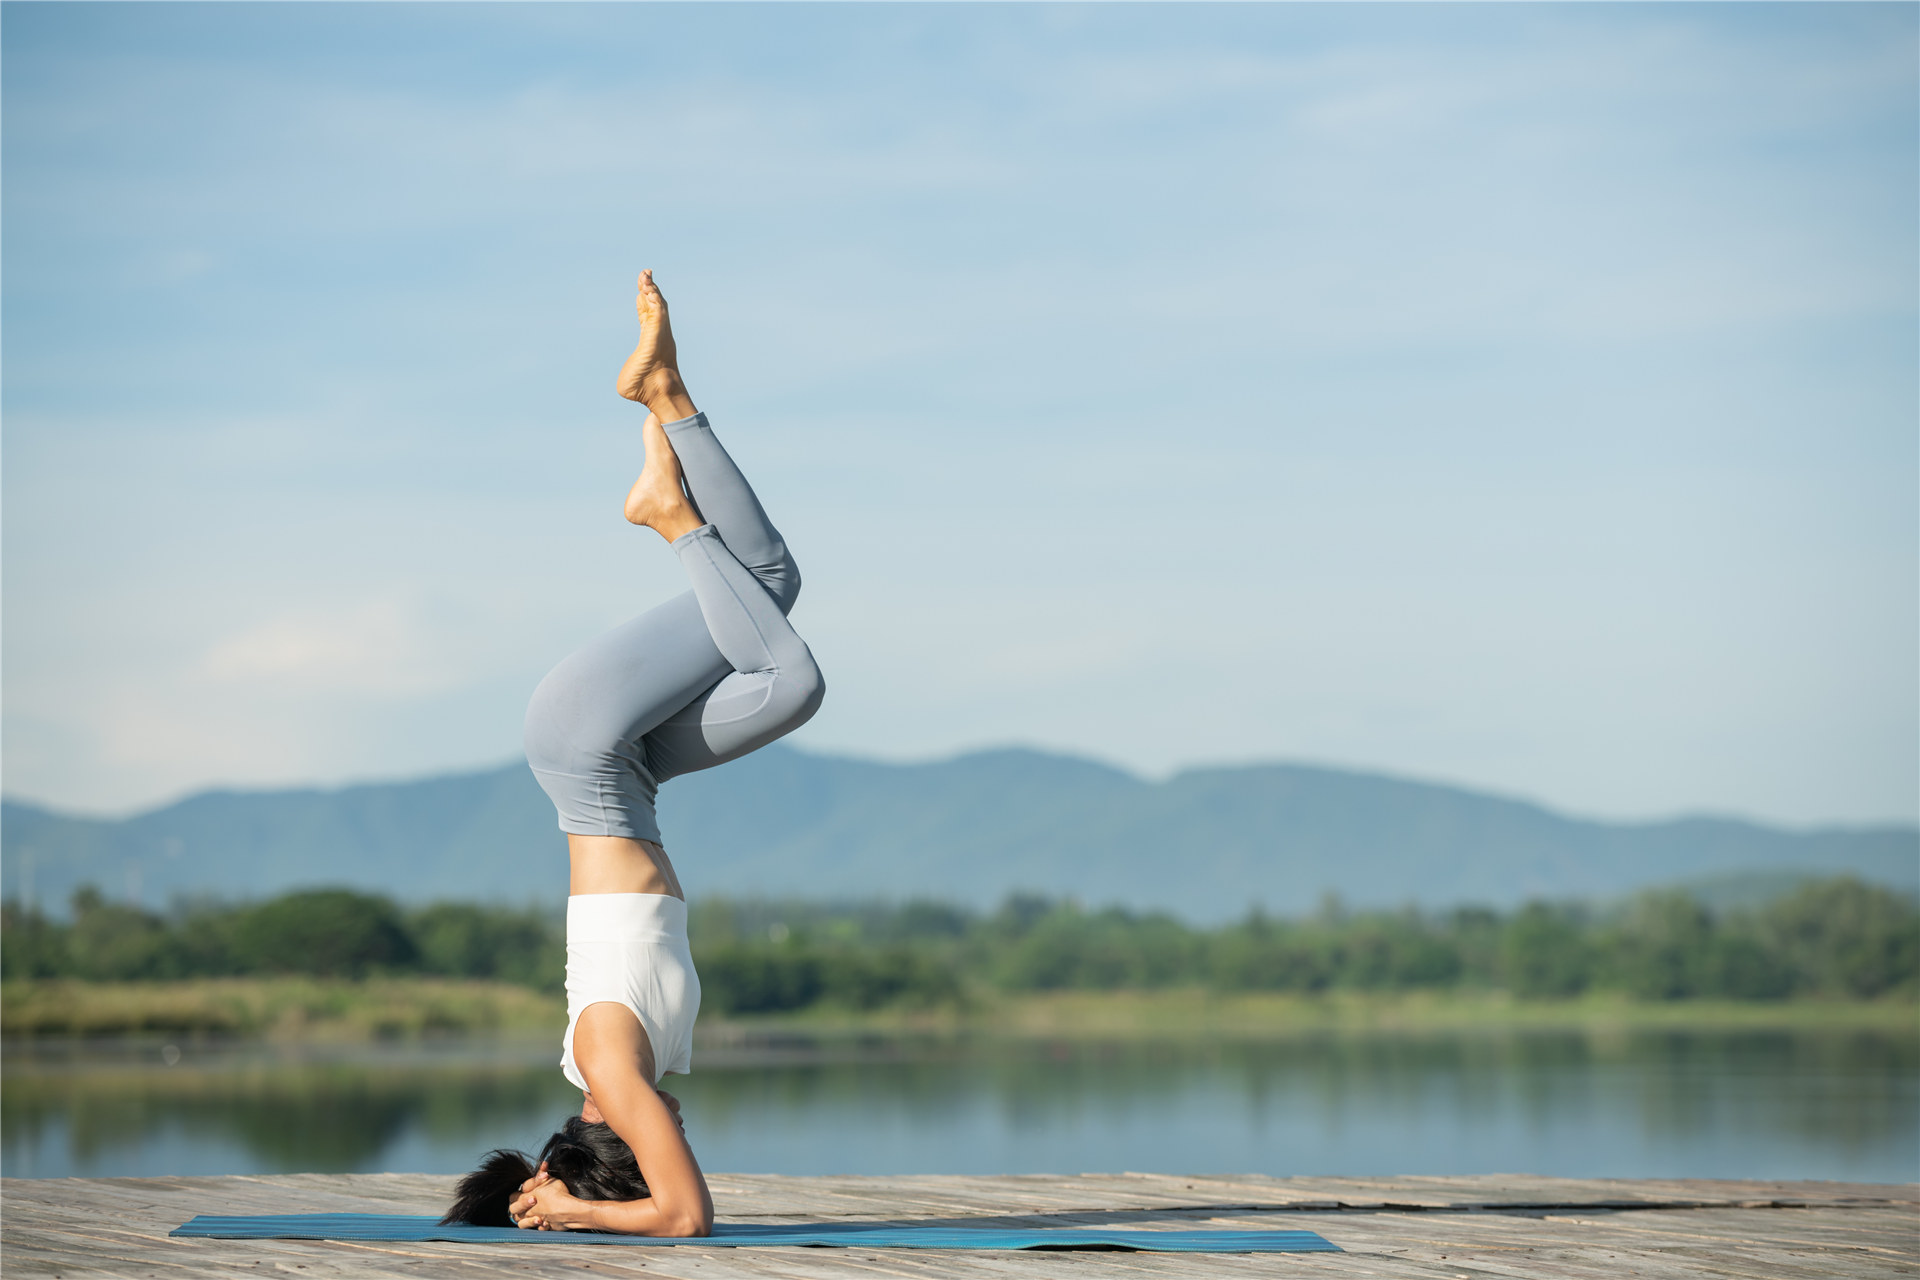 kvinne-yoga-matte-slapp av-park-ung-sporty-asiatisk-kvinne-øver-yoga-gjør-hodestående-trening-trening-bruker-sportsklær-bukser-topp